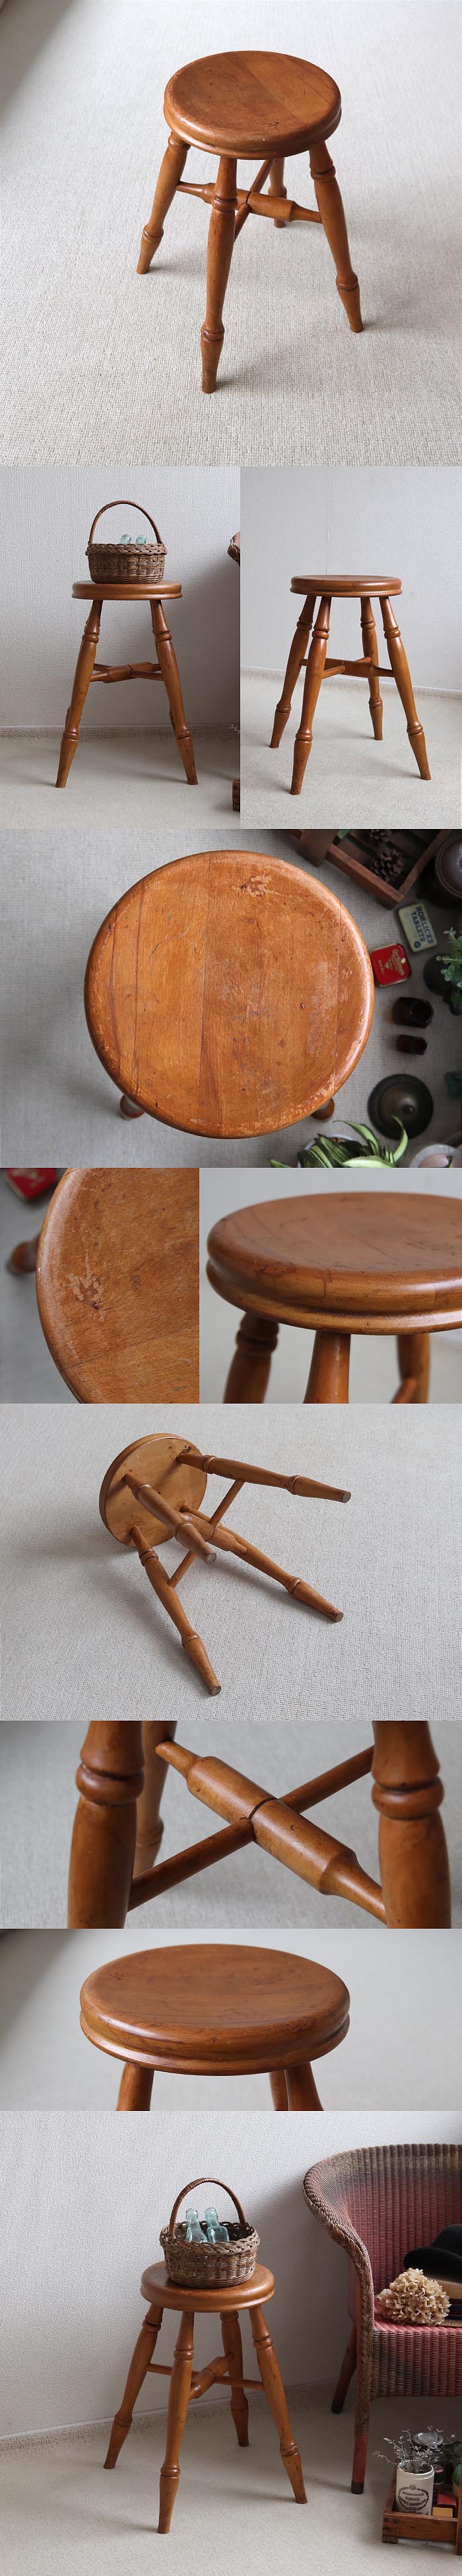 イギリス アンティーク スツール 木製椅子 丸イス カントリー ナチュラル 家具「花台にも」T-947